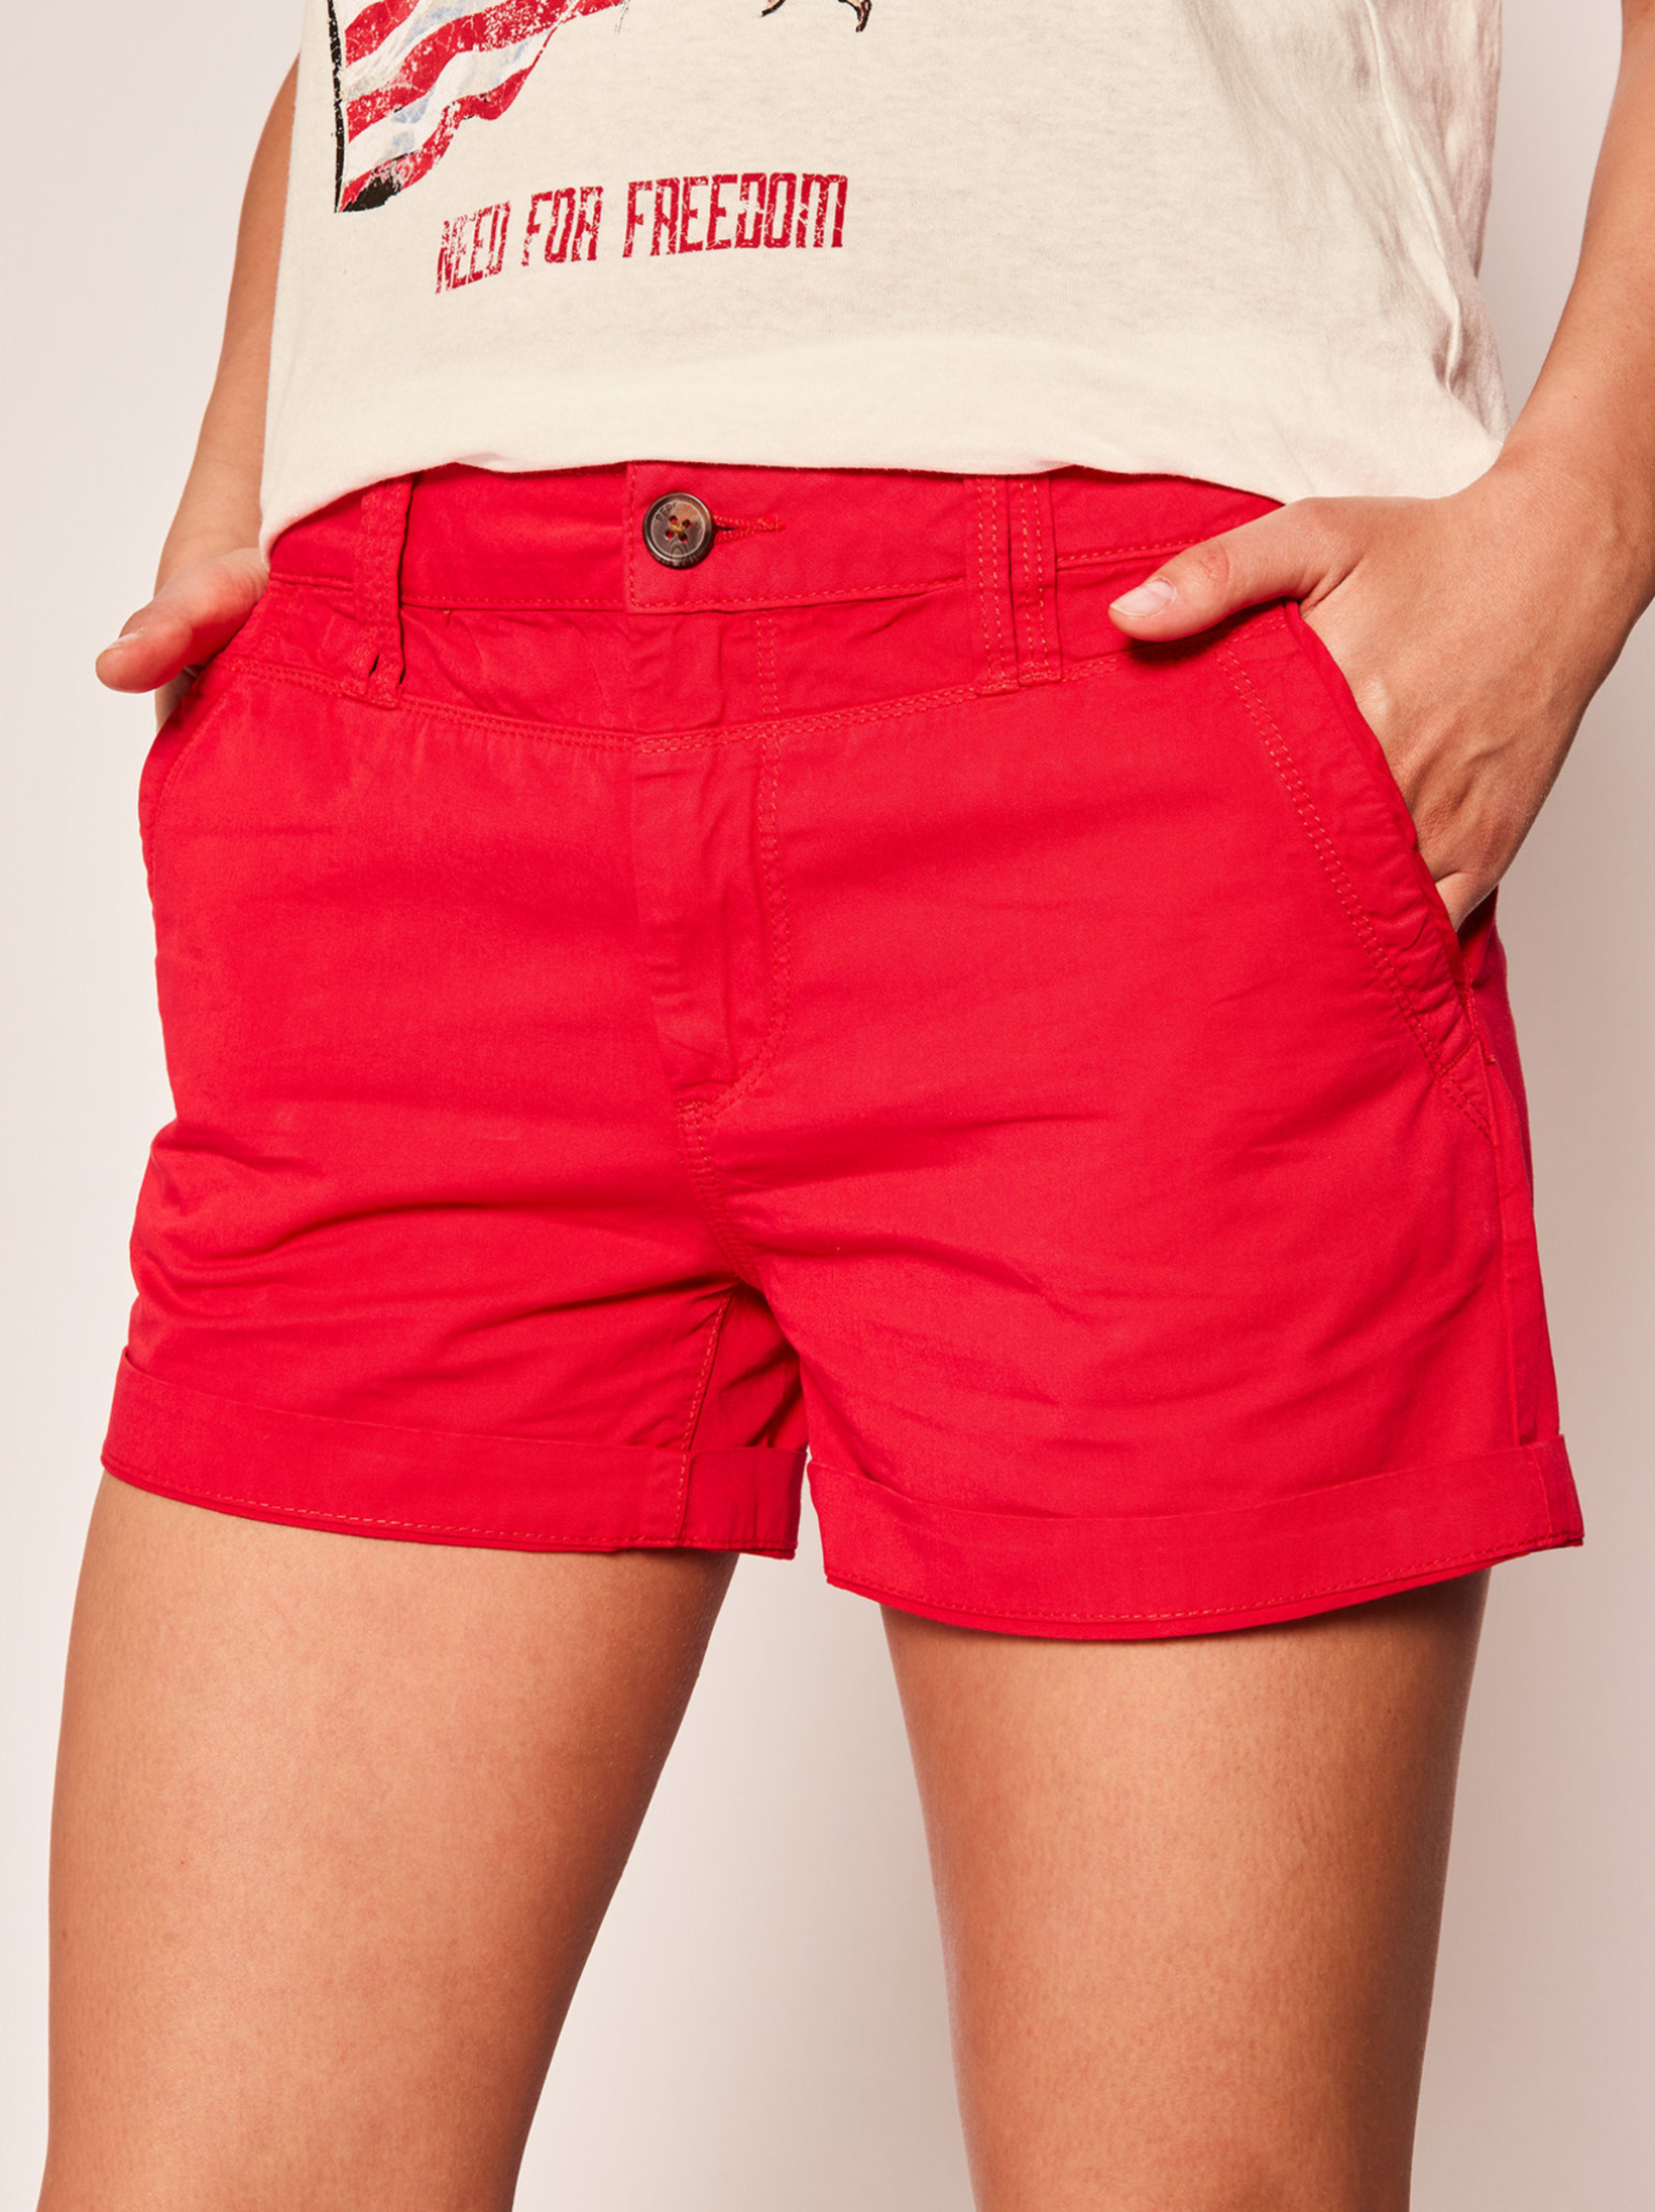 Pepe Jeans dámské červené šortky Balboa - 31 (238)